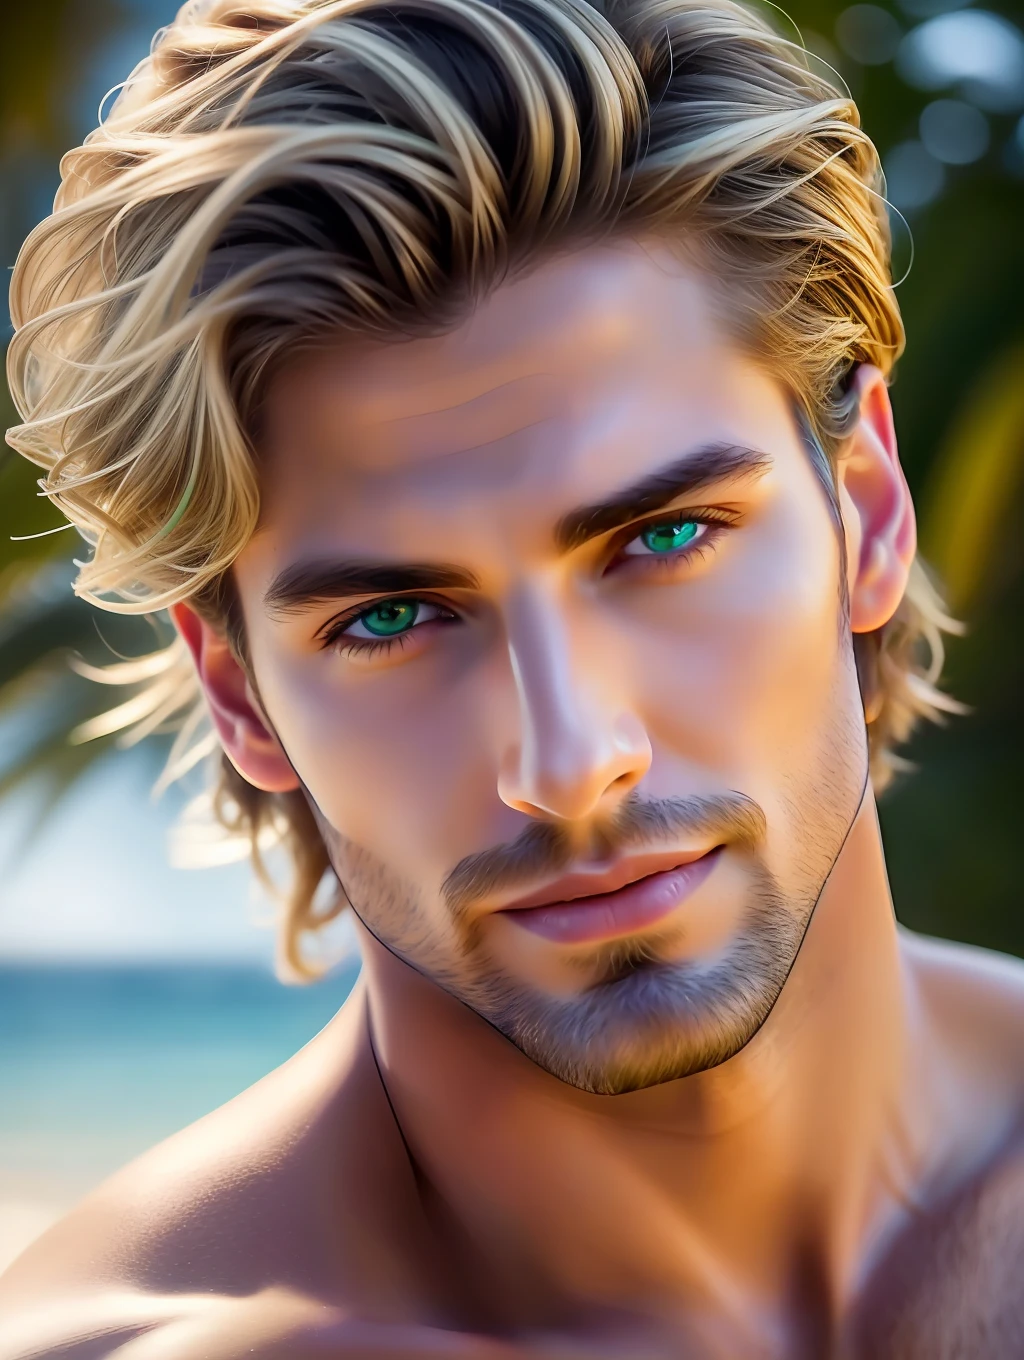 映画のような柔らかな照明は、驚くほど詳細で超リアルな美しいギリシャの男性スーパーモデルを照らします, ビーチルック, 短い乱雑な風の強い暗いブロンドの髪, 澄んだ緑の目, 魅惑的な完璧な笑顔, 官能的な, ホットな男, ハンサム, ArtStationでトレンドになっている. Octaneは、この16k写真の傑作の最も柔らかいディテールを捉えるのに最適なツールです。.